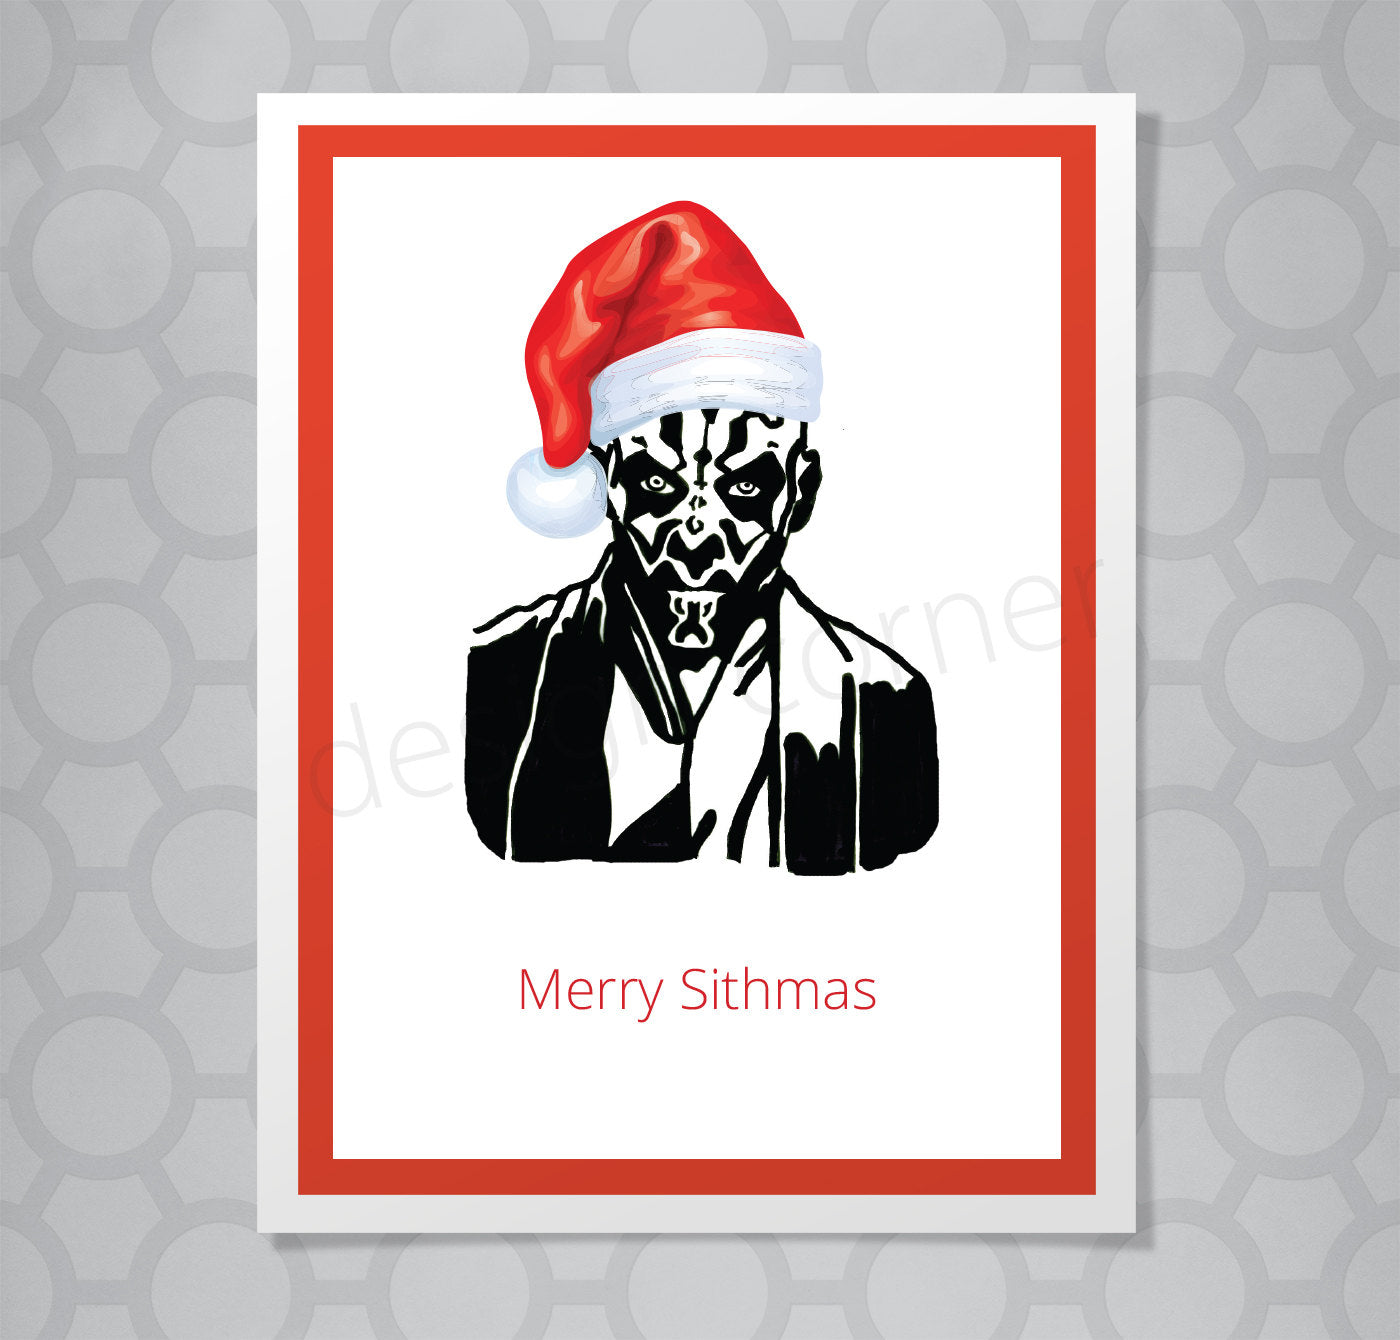 Star Wars Merry Sithmas Christmas Card